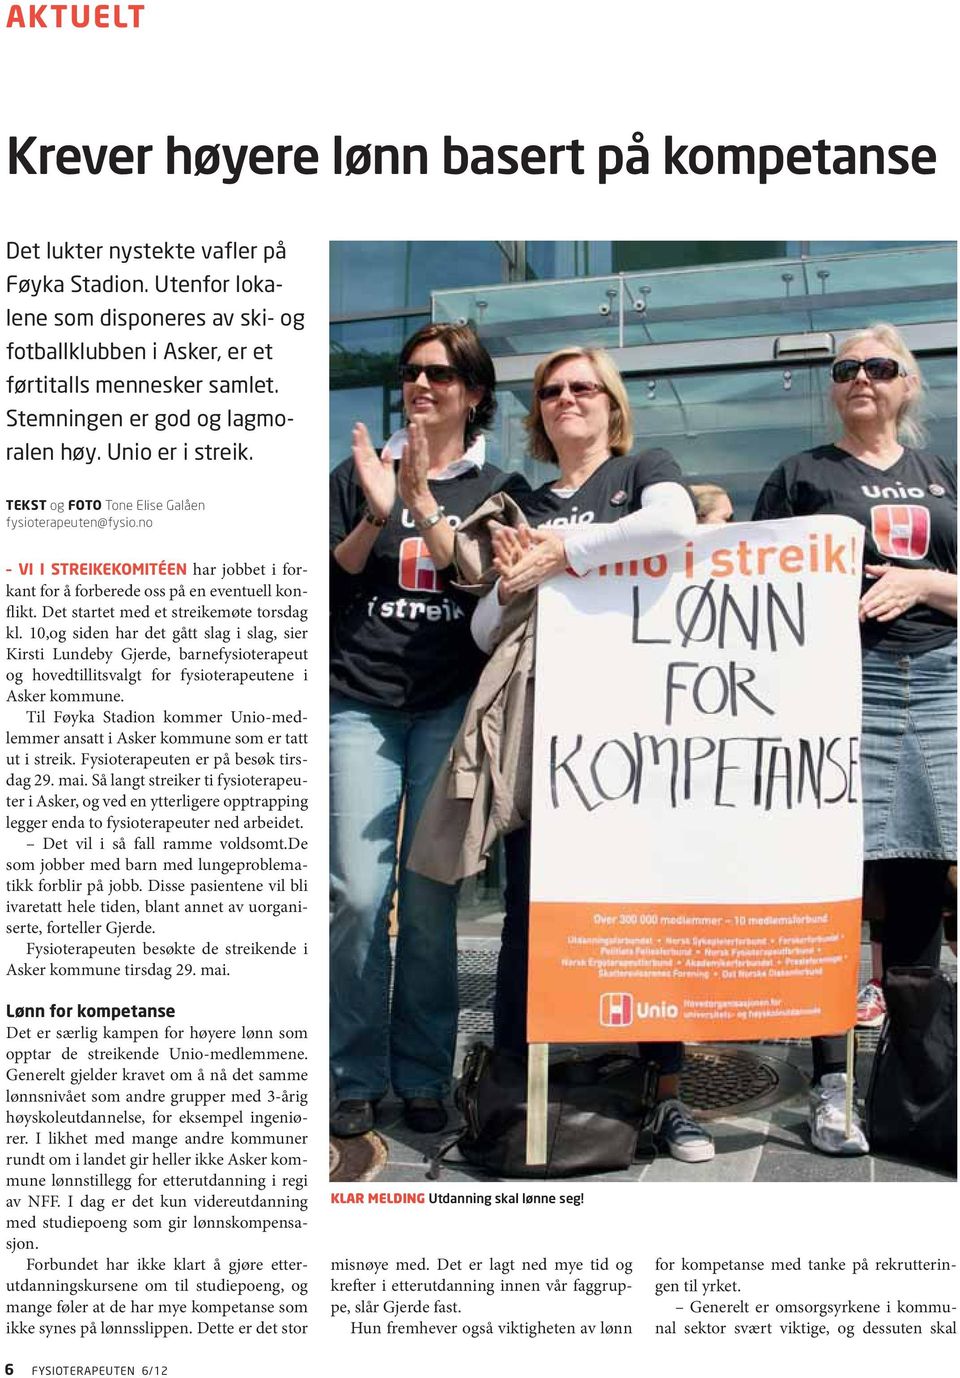 Det startet med et streikemøte torsdag kl. 10,og siden har det gått slag i slag, sier Kirsti Lundeby Gjerde, barnefysioterapeut og hovedtillitsvalgt for fysioterapeutene i Asker kommune.